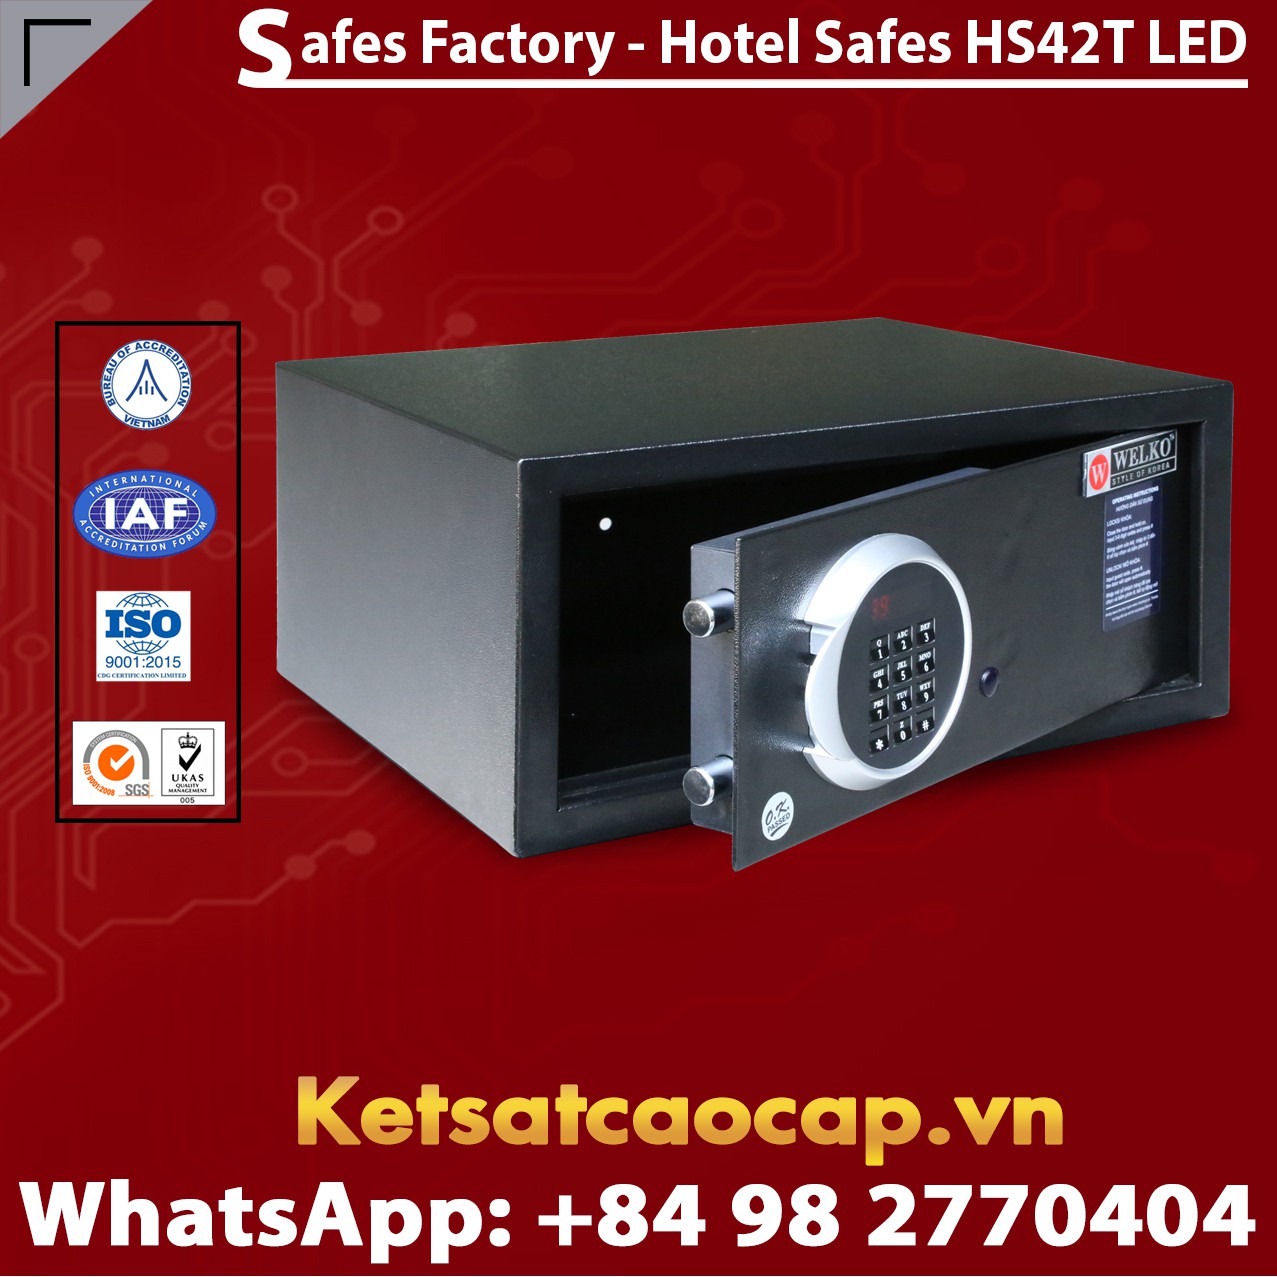 Portable Hotel Safes WELKO HS42T LED